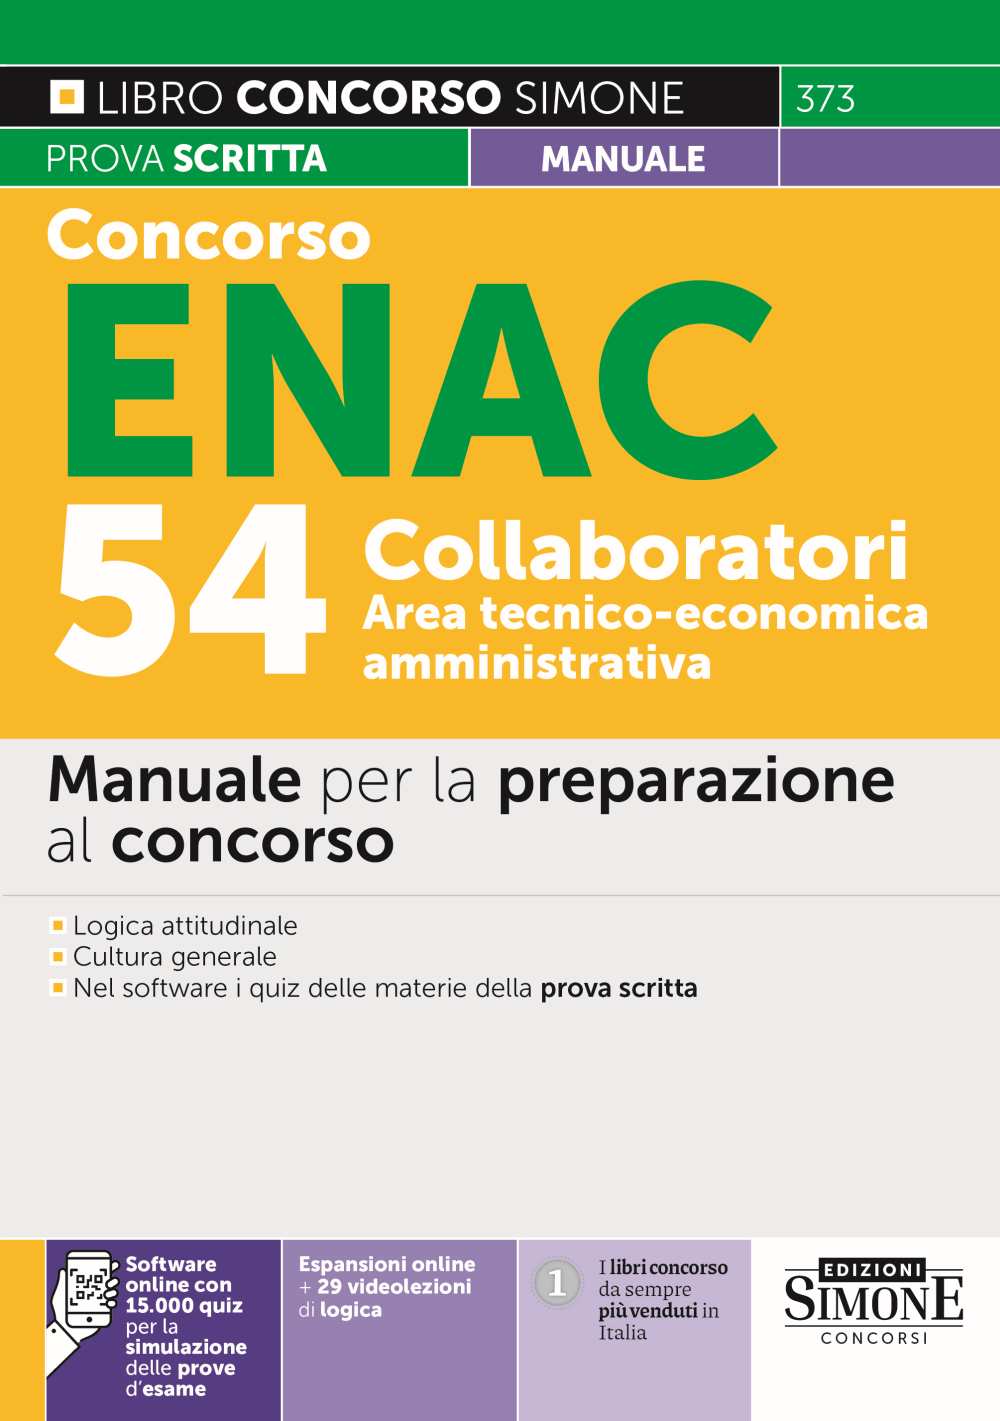 Concorso ENAC 54 Collaboratori Area tecnico-economica amministrativa - Manuale - 373